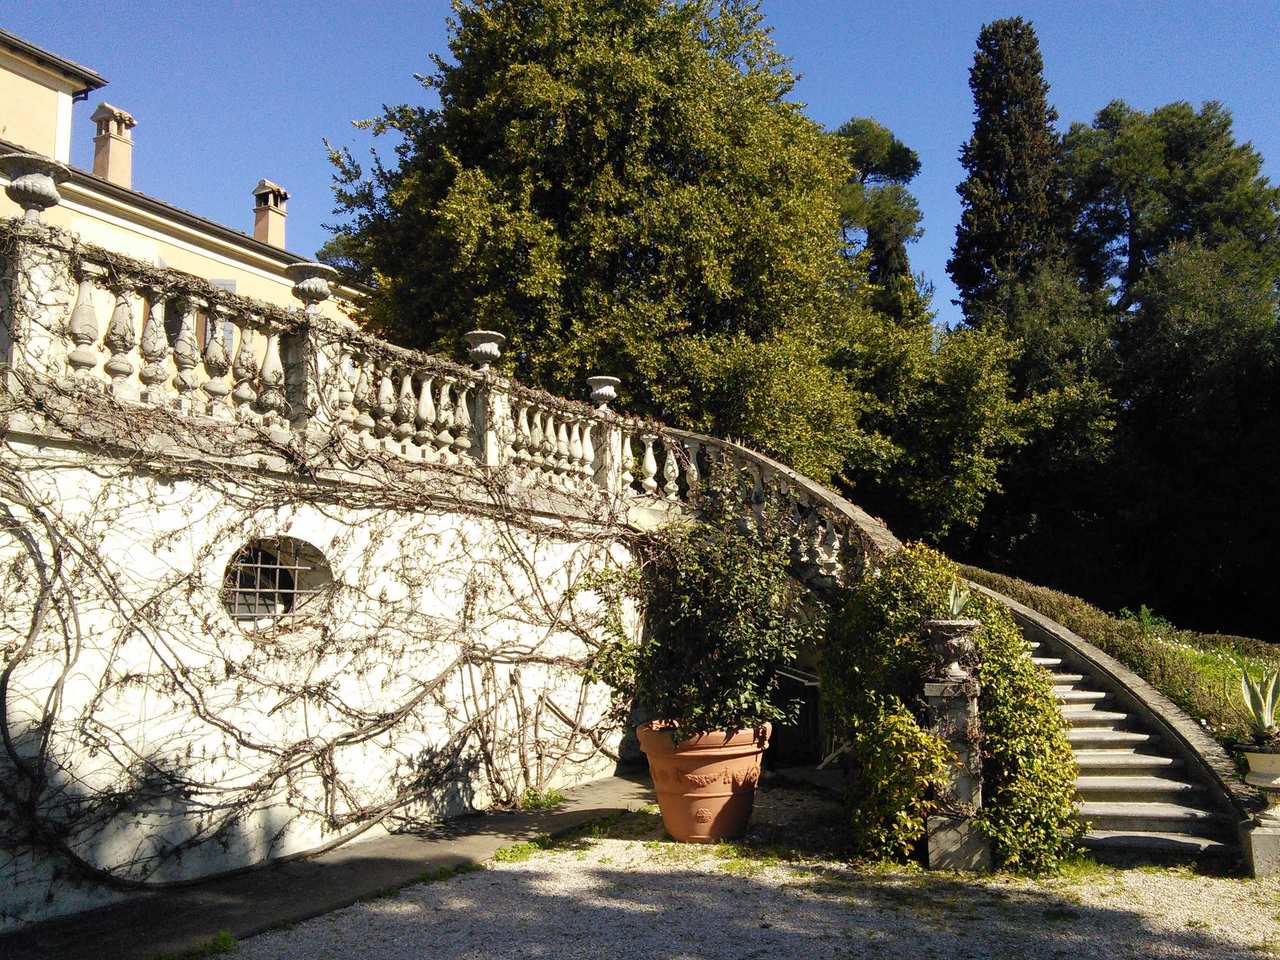 A vendre villa in zone tranquille Rimini Emilia-Romagna